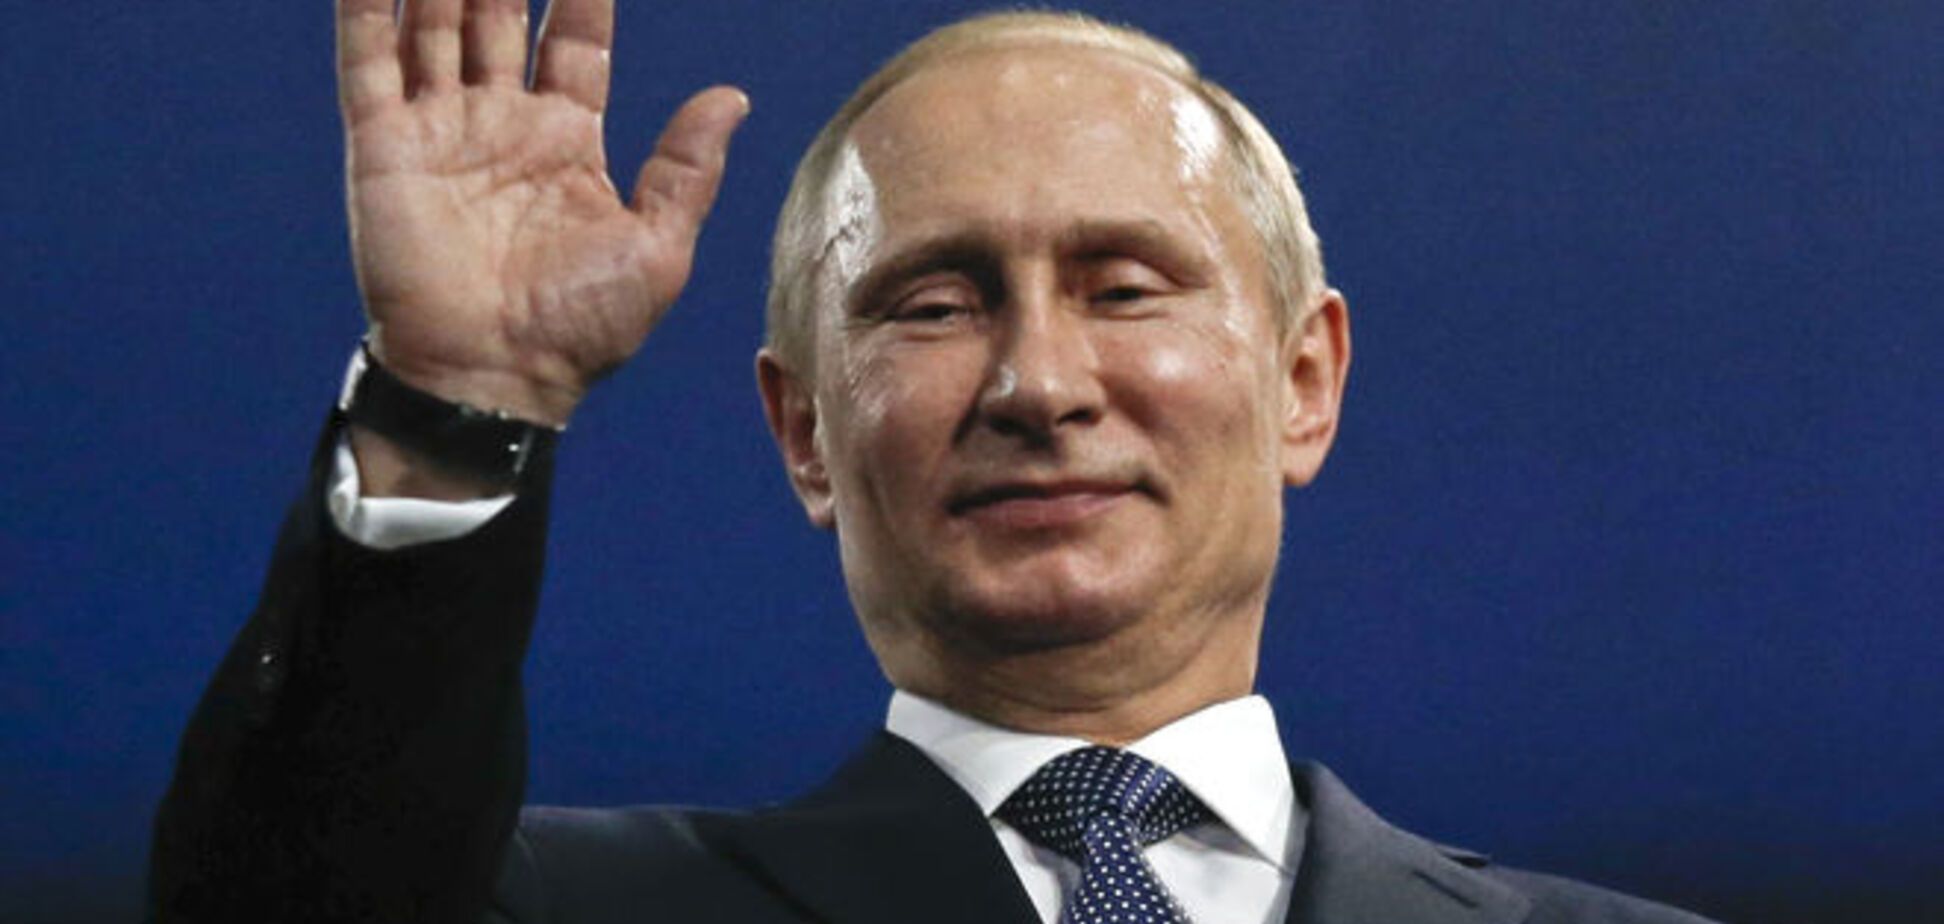 Путину плевать на Россию, он думает только о личном обогащении и власти - бывший инвестор